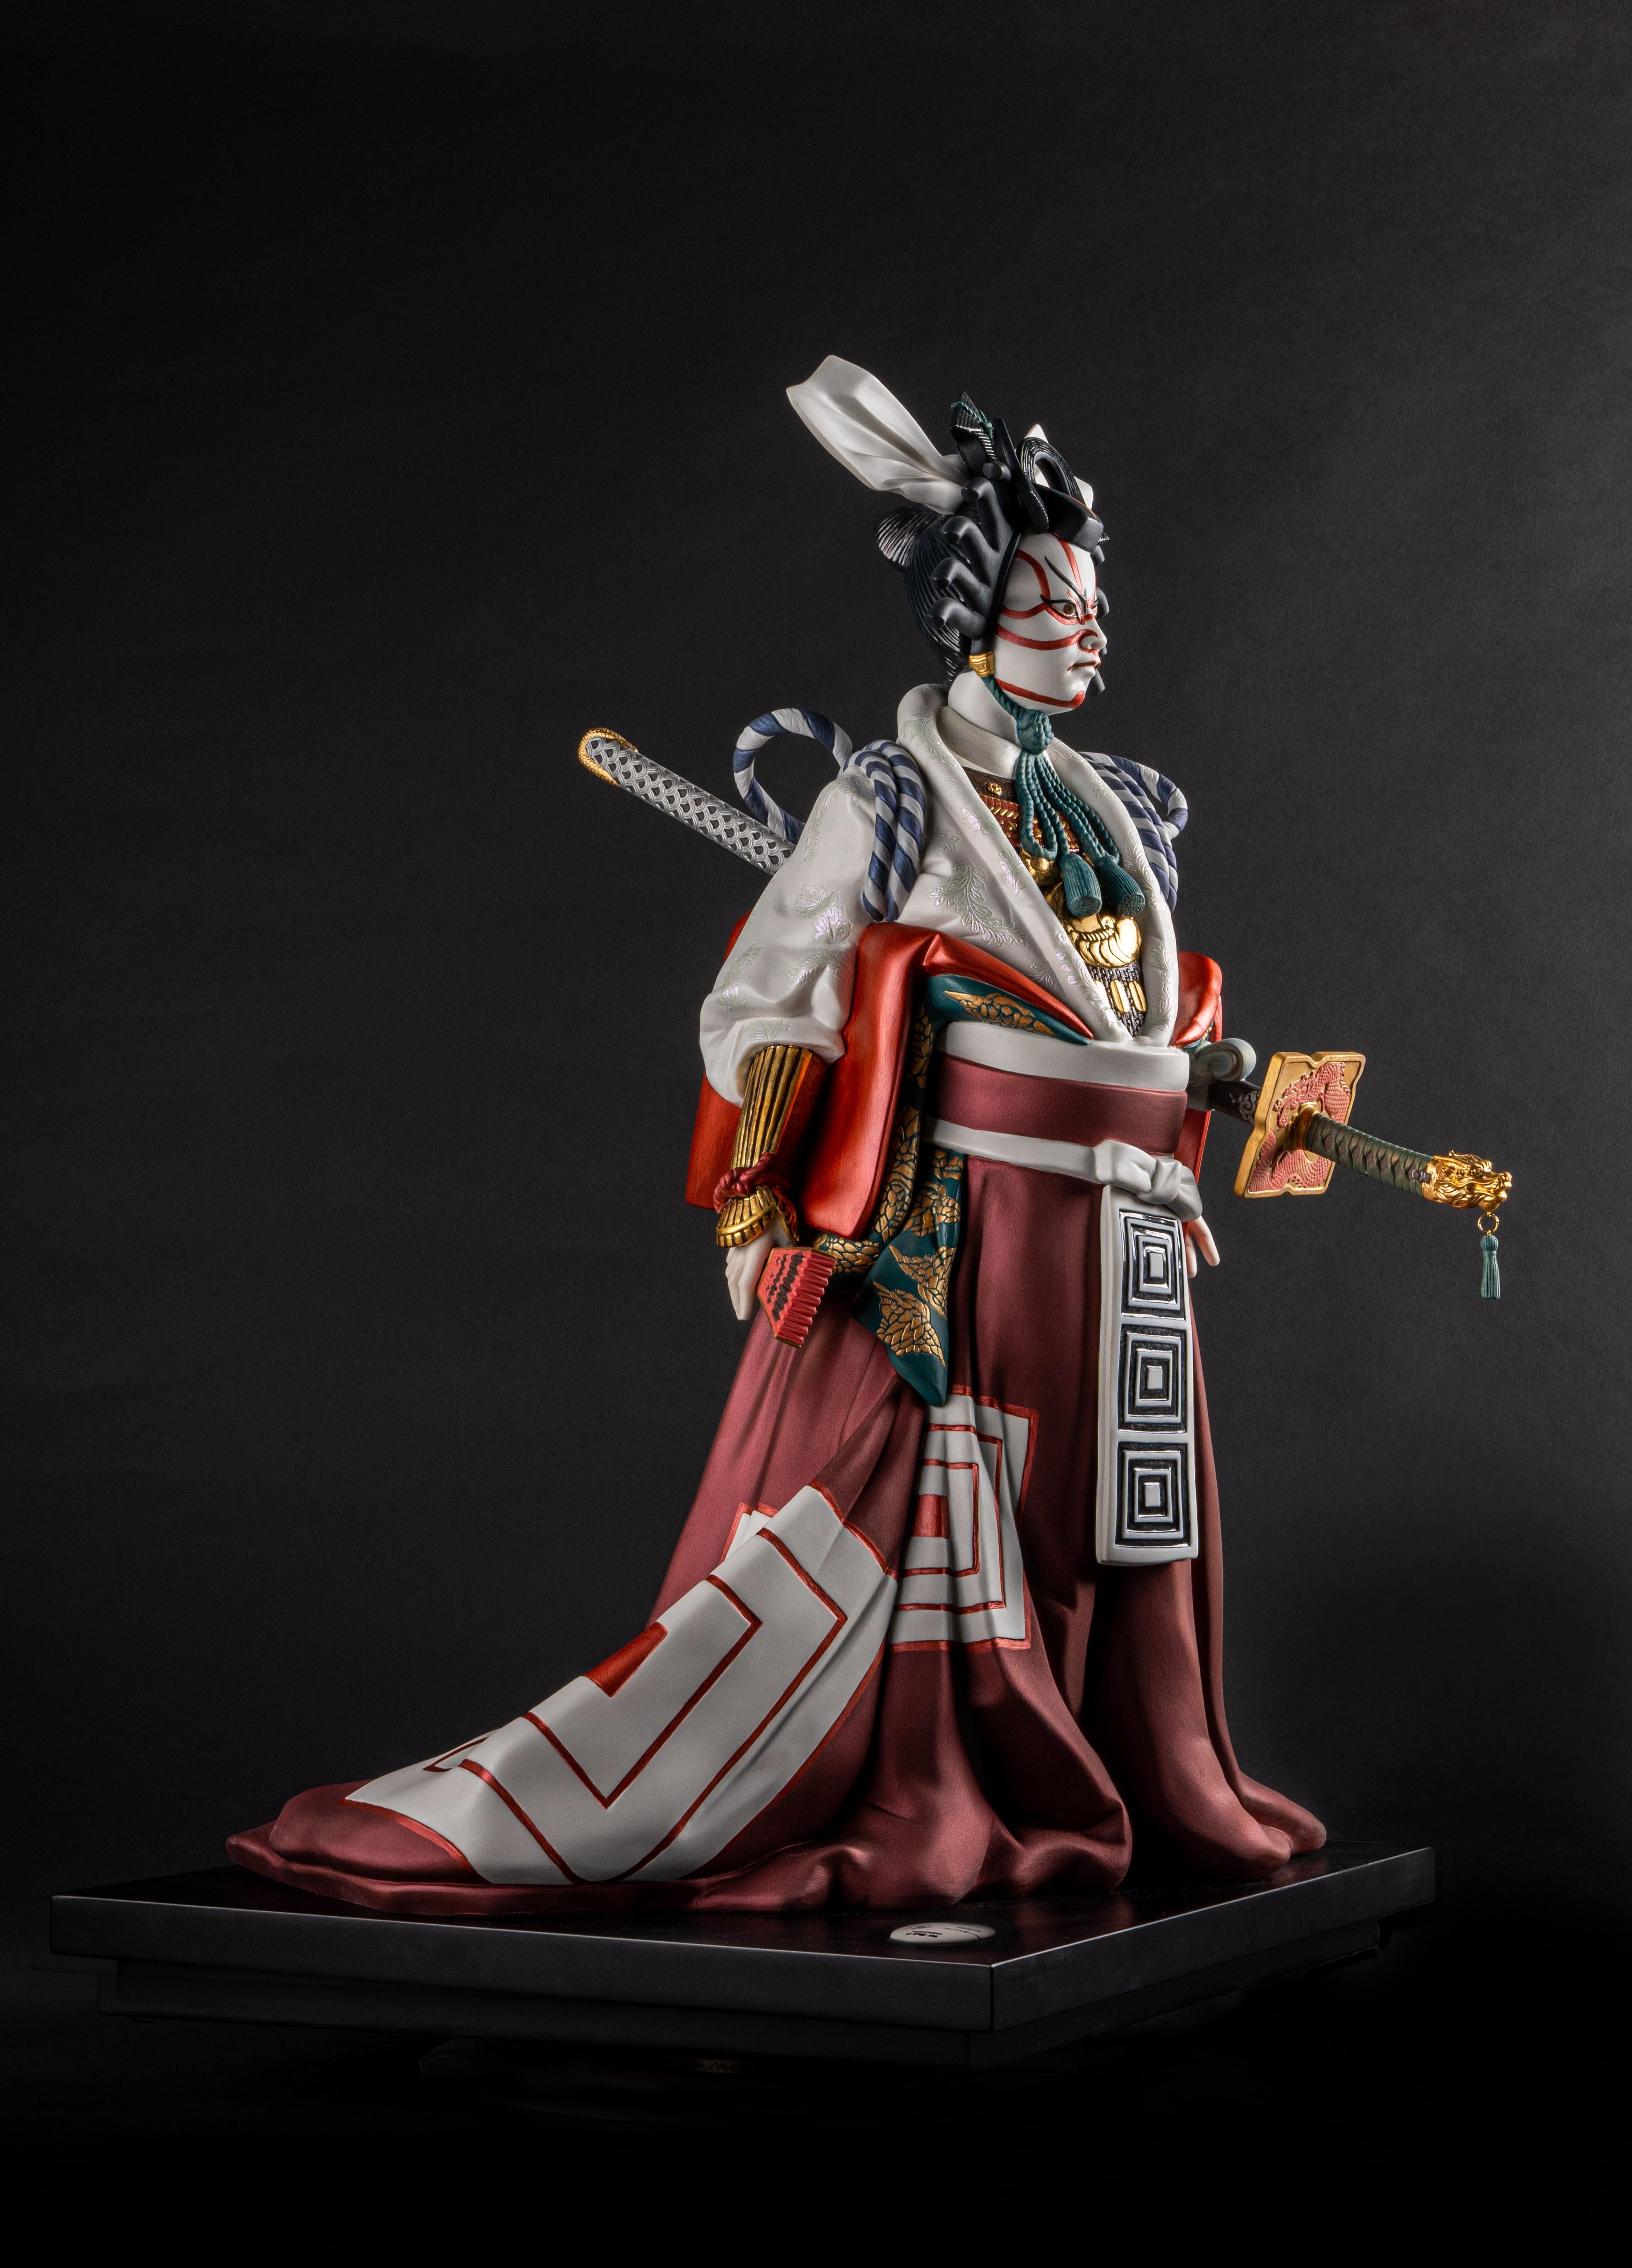 Une sculpture en haute porcelaine en édition limitée représente un acteur de kabuki, l'une des formes les plus appréciées du théâtre japonais. Ce personnage puissant vêtu d'un costume spectaculaire est une édition limitée à 250 unités en Haute